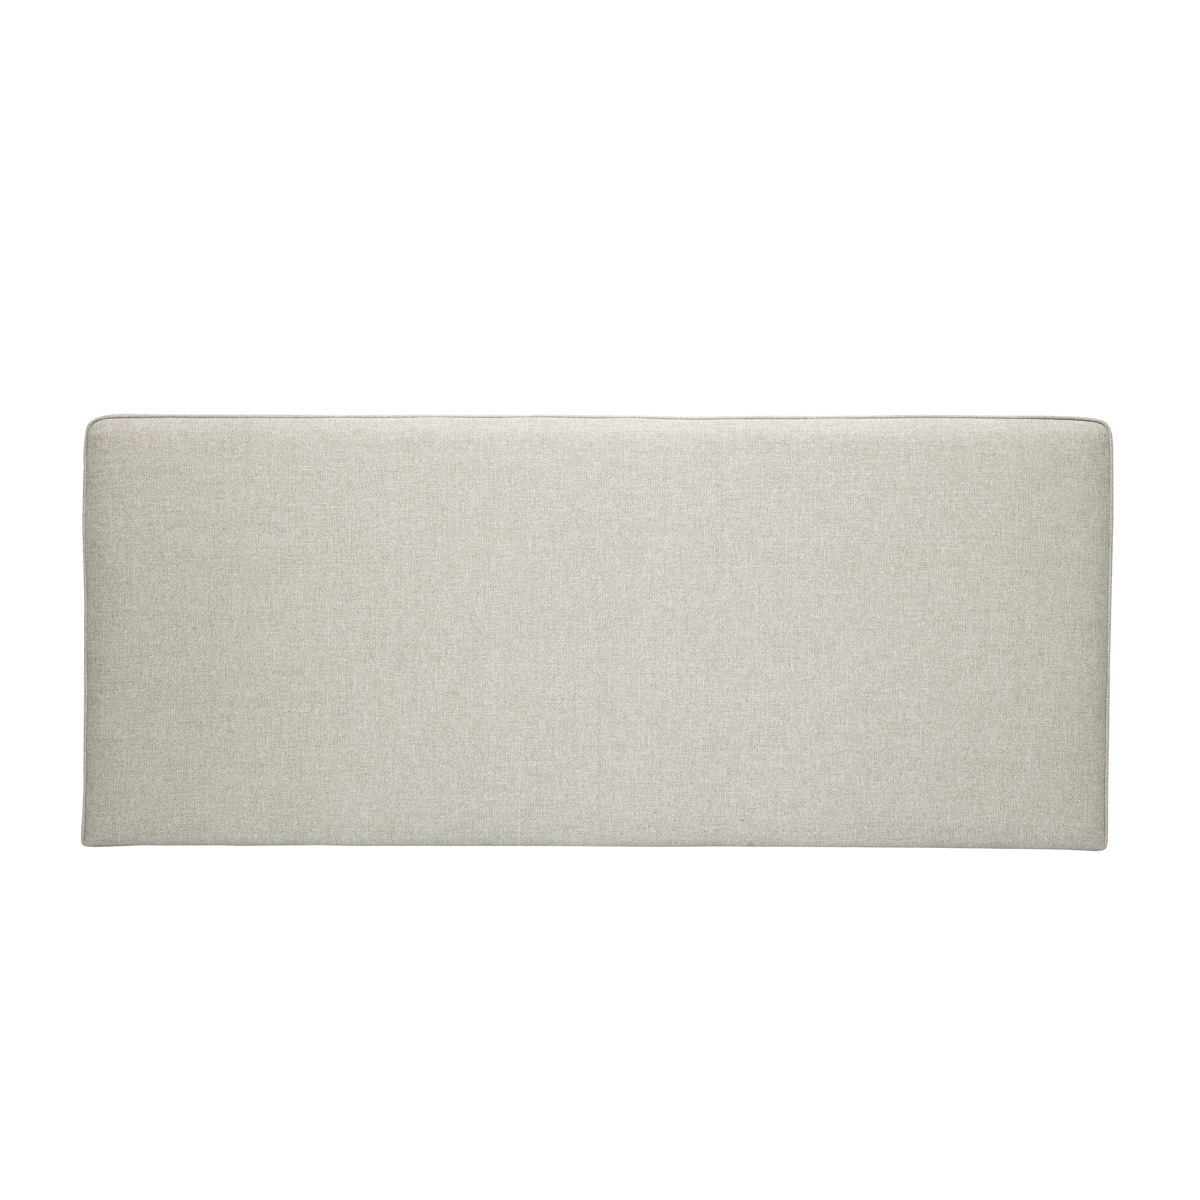 Testata letto a muro in tessuto beige L180 cm LILY